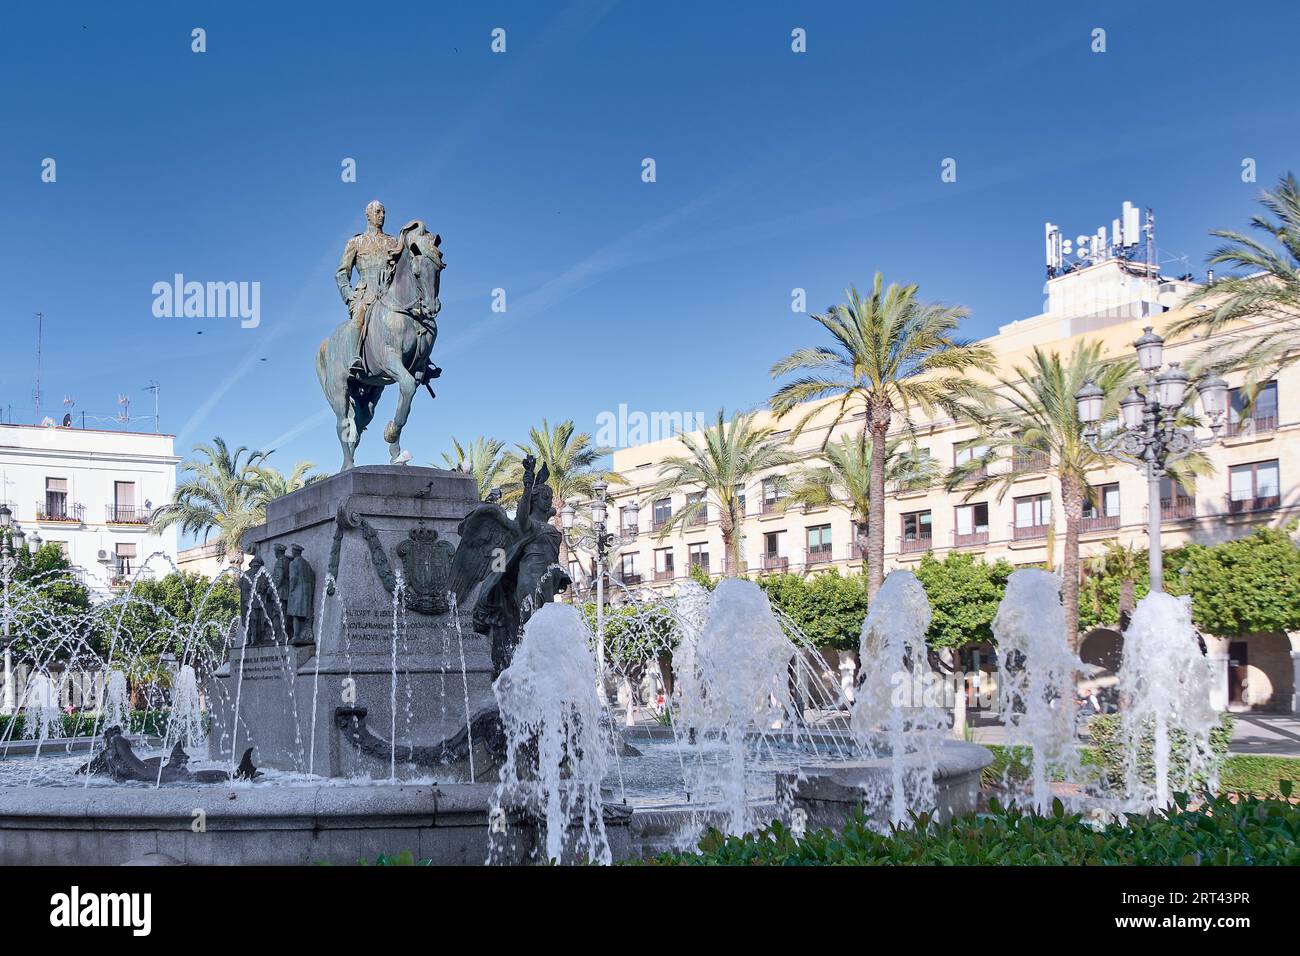 Monument to Miguel Primo de Rivera in the Plaza del Arenal in Jerez de la Frontera, Andalucia, Spain Stock Photo